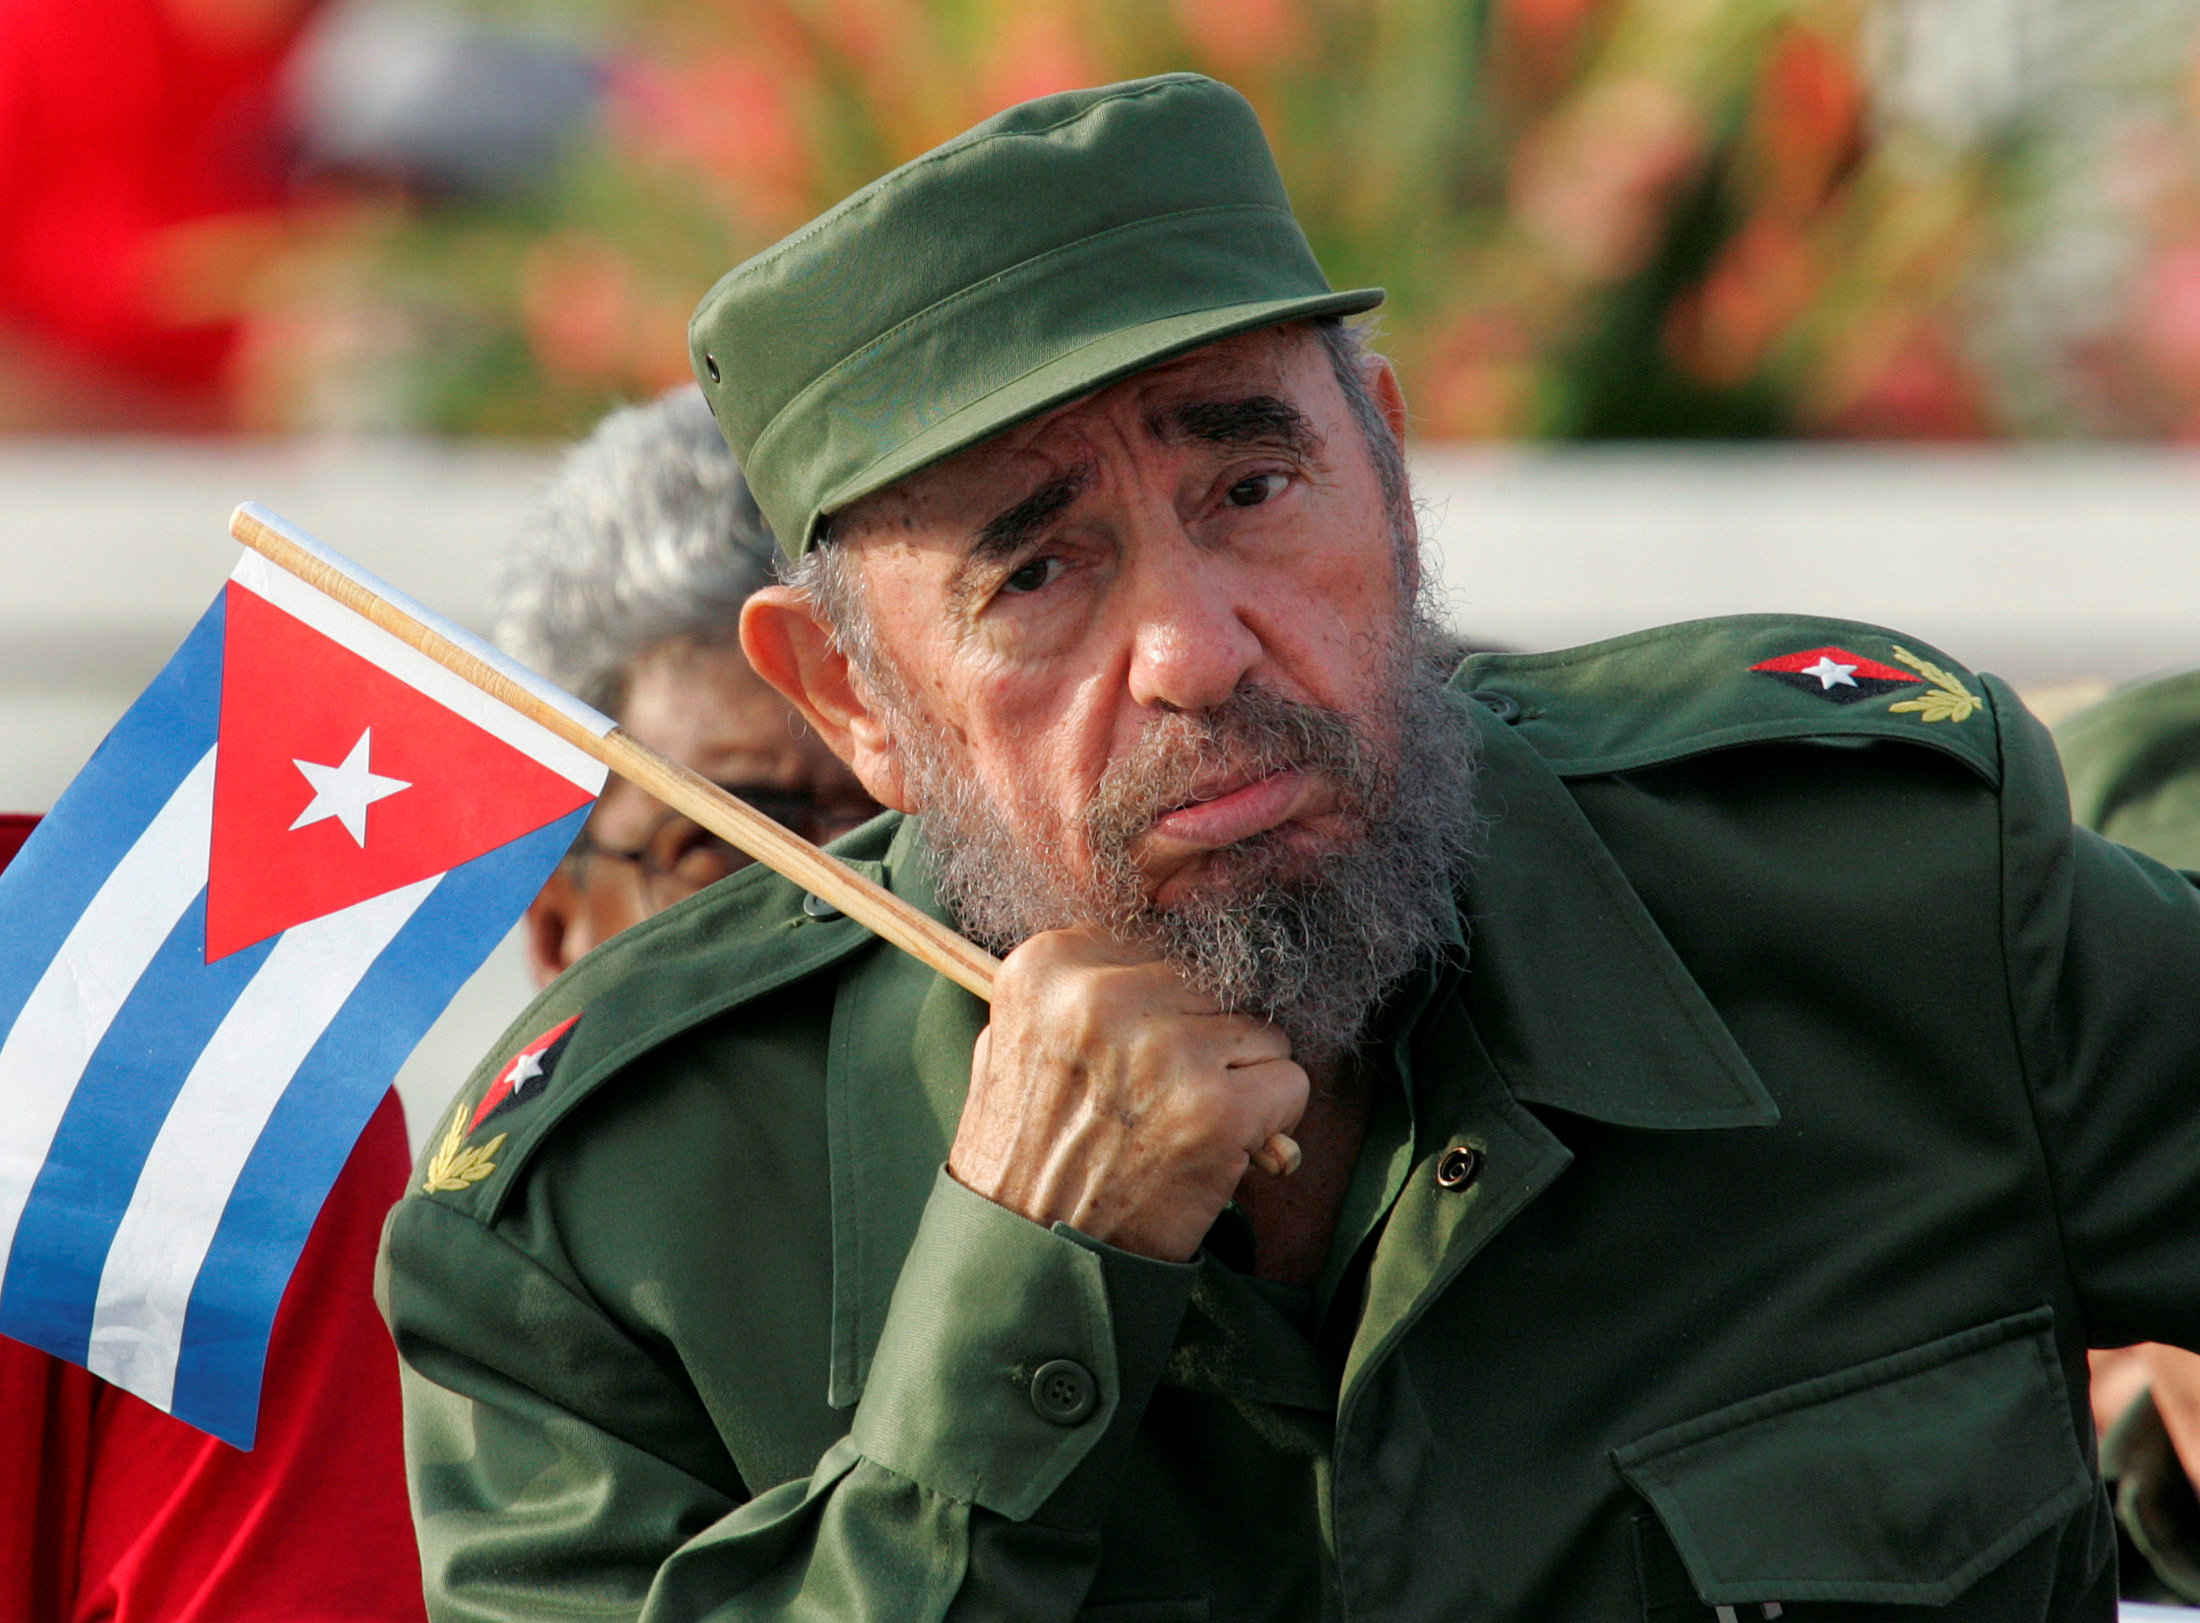 Fidel también gritó Alcarajo